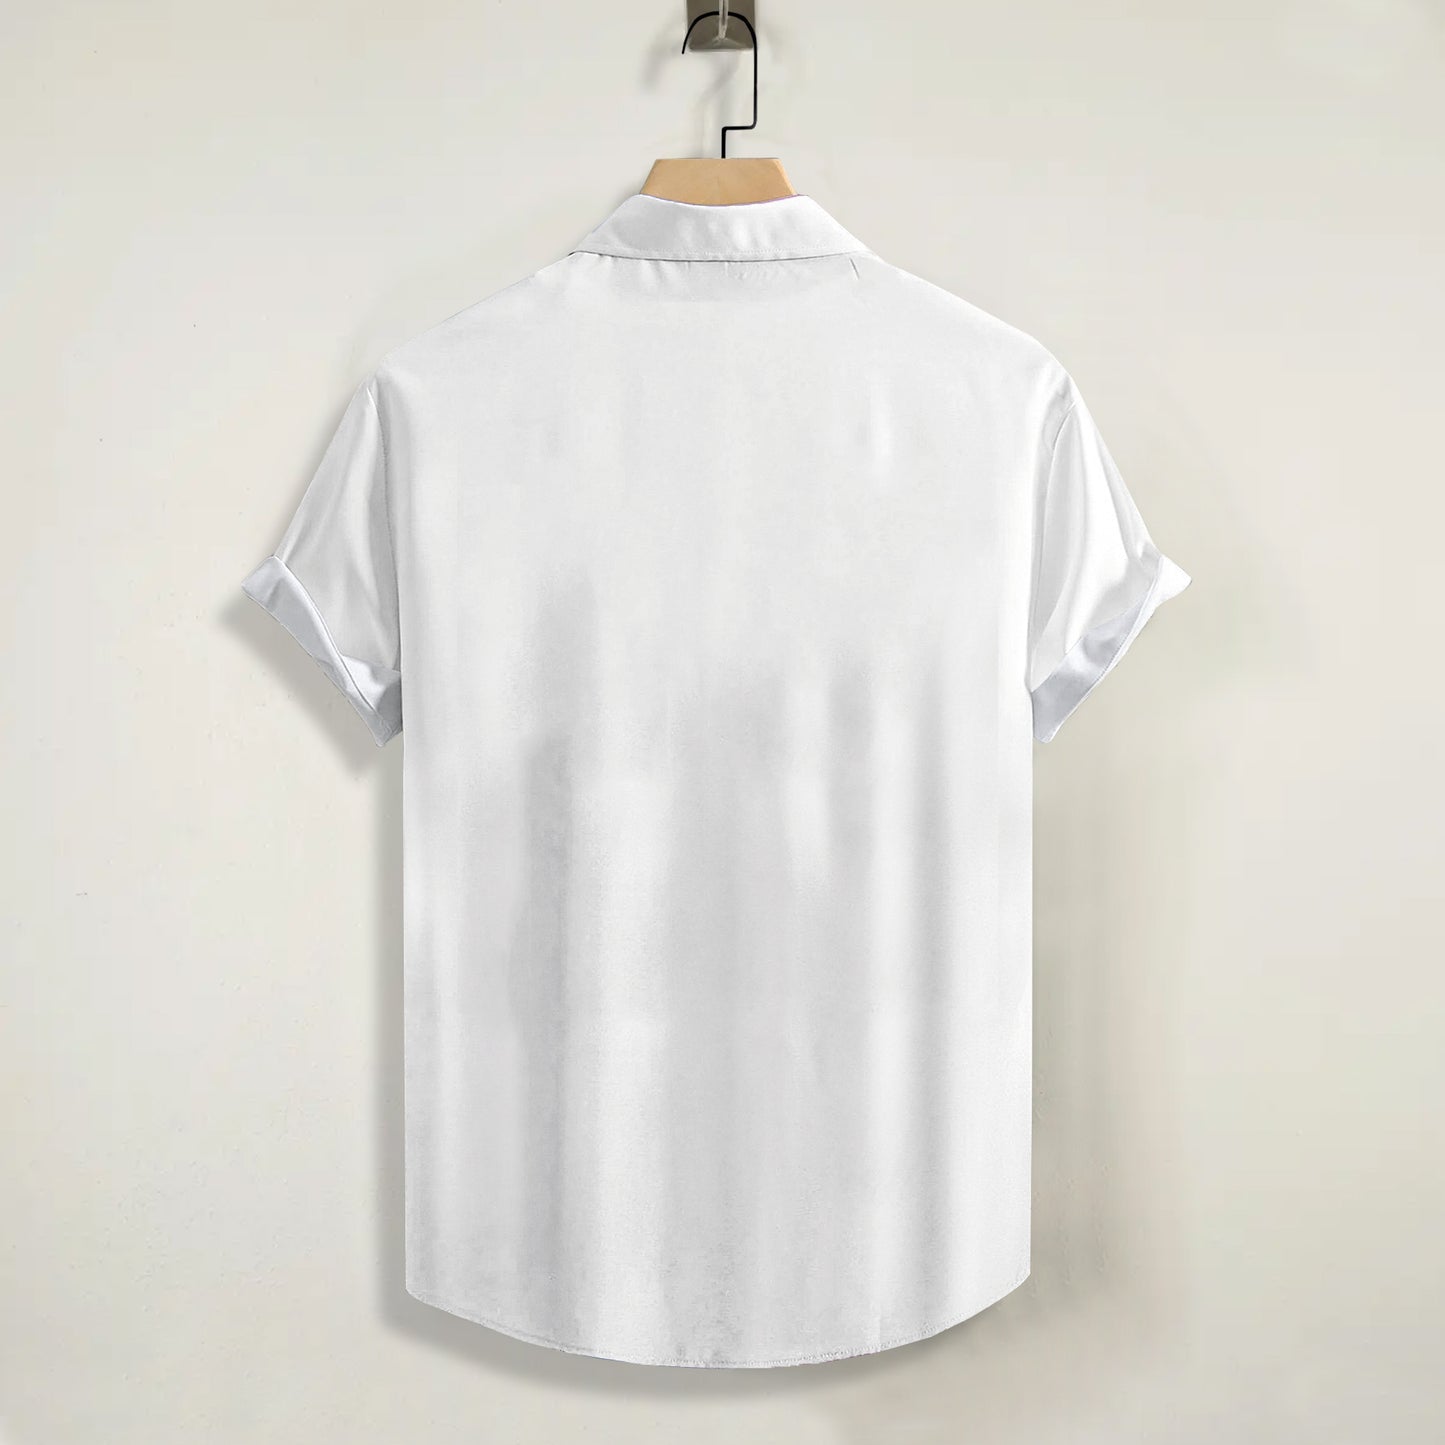 Maimi No. 3 Print Short Sleeve Shirt